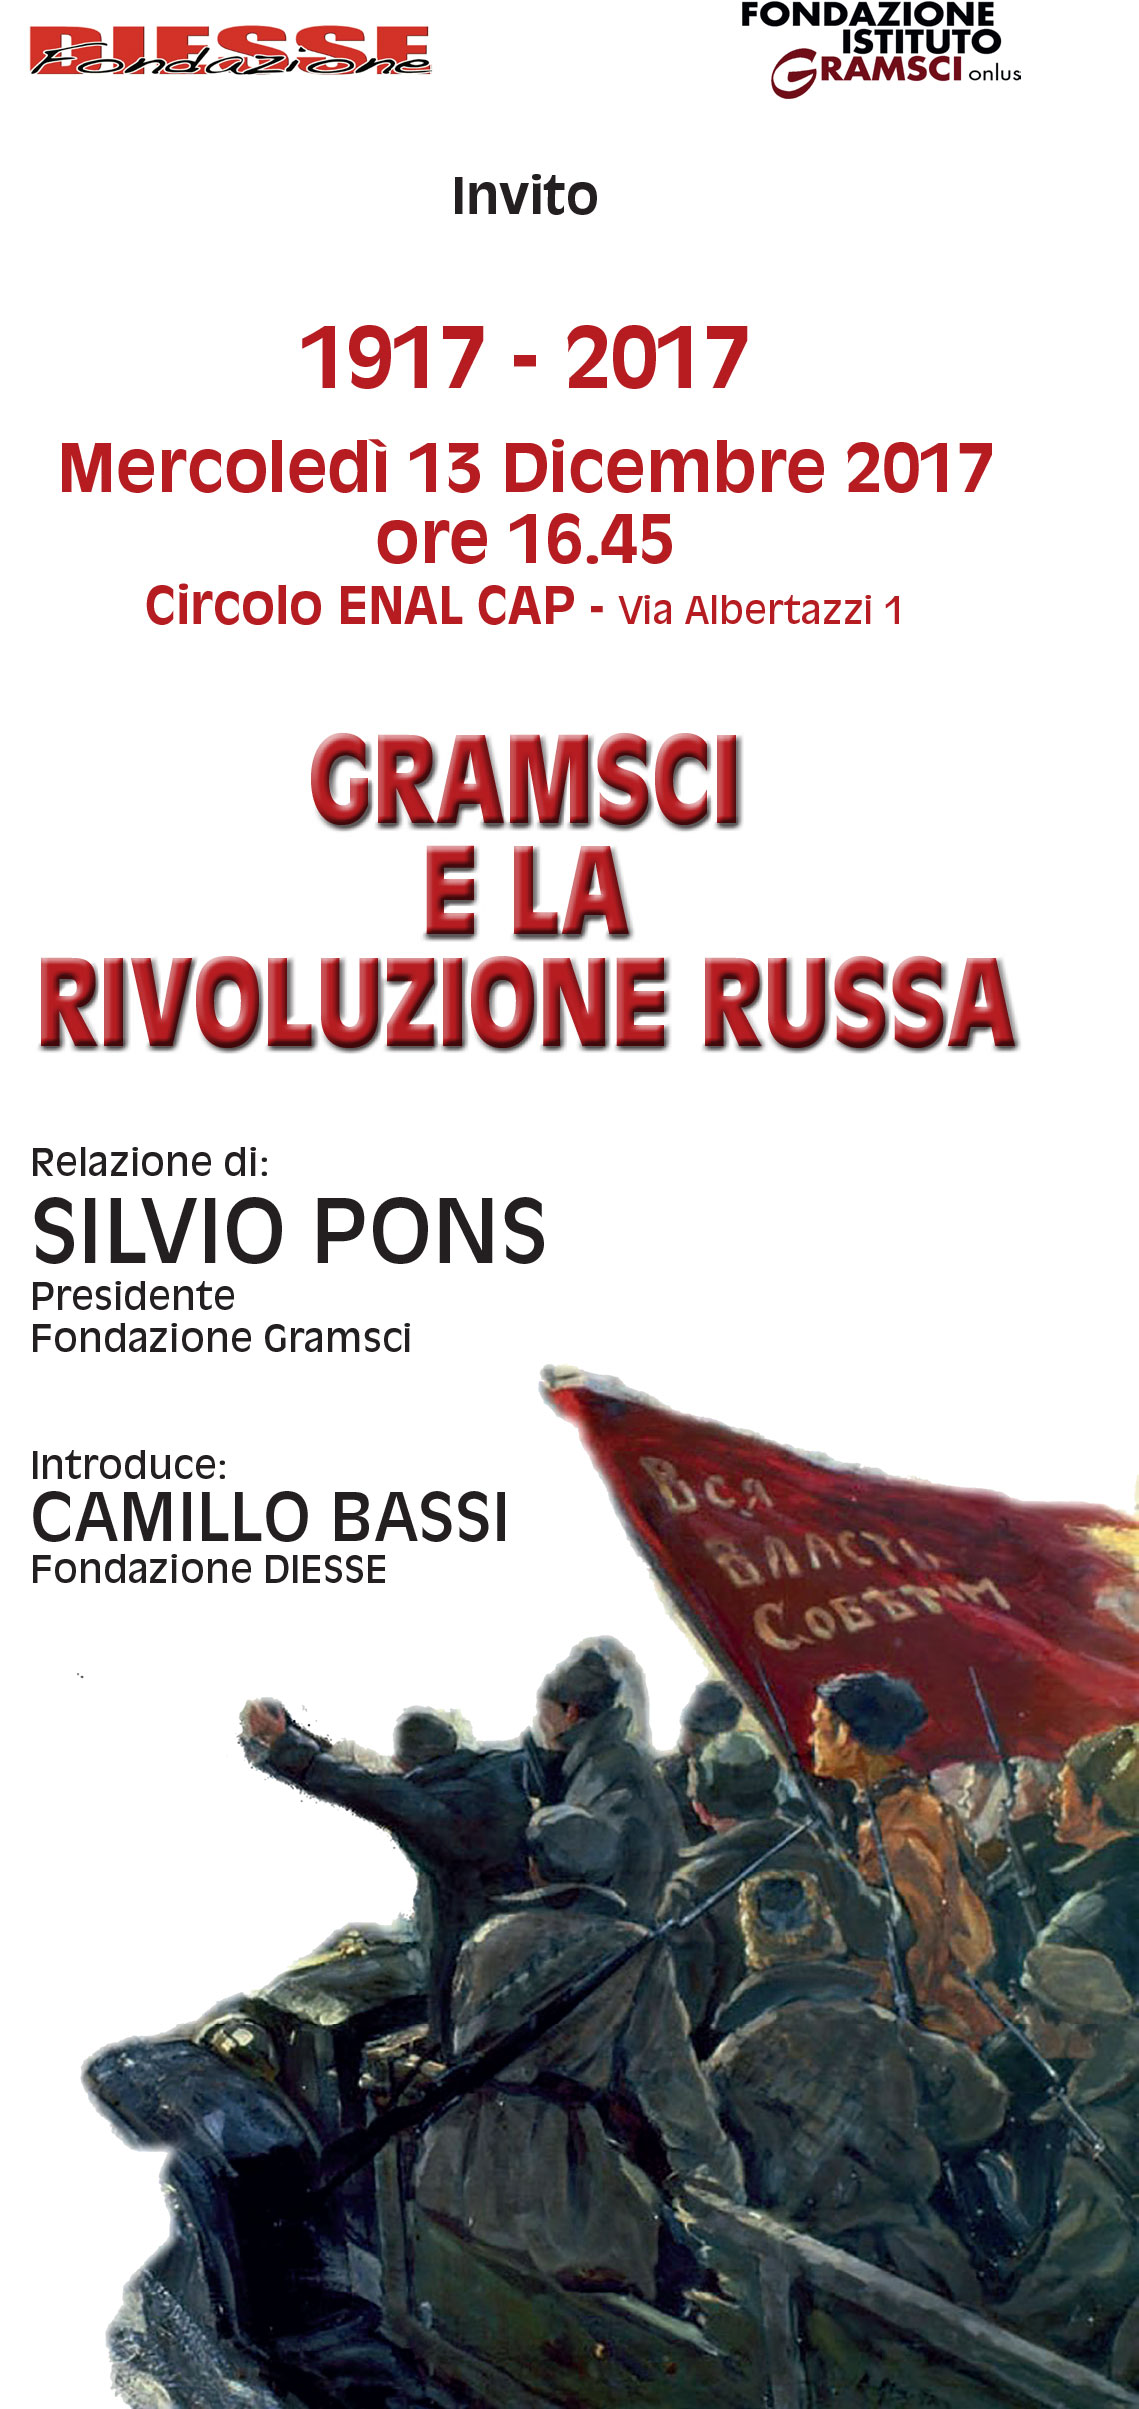 Invito Gramsci e la rivoluzione russa